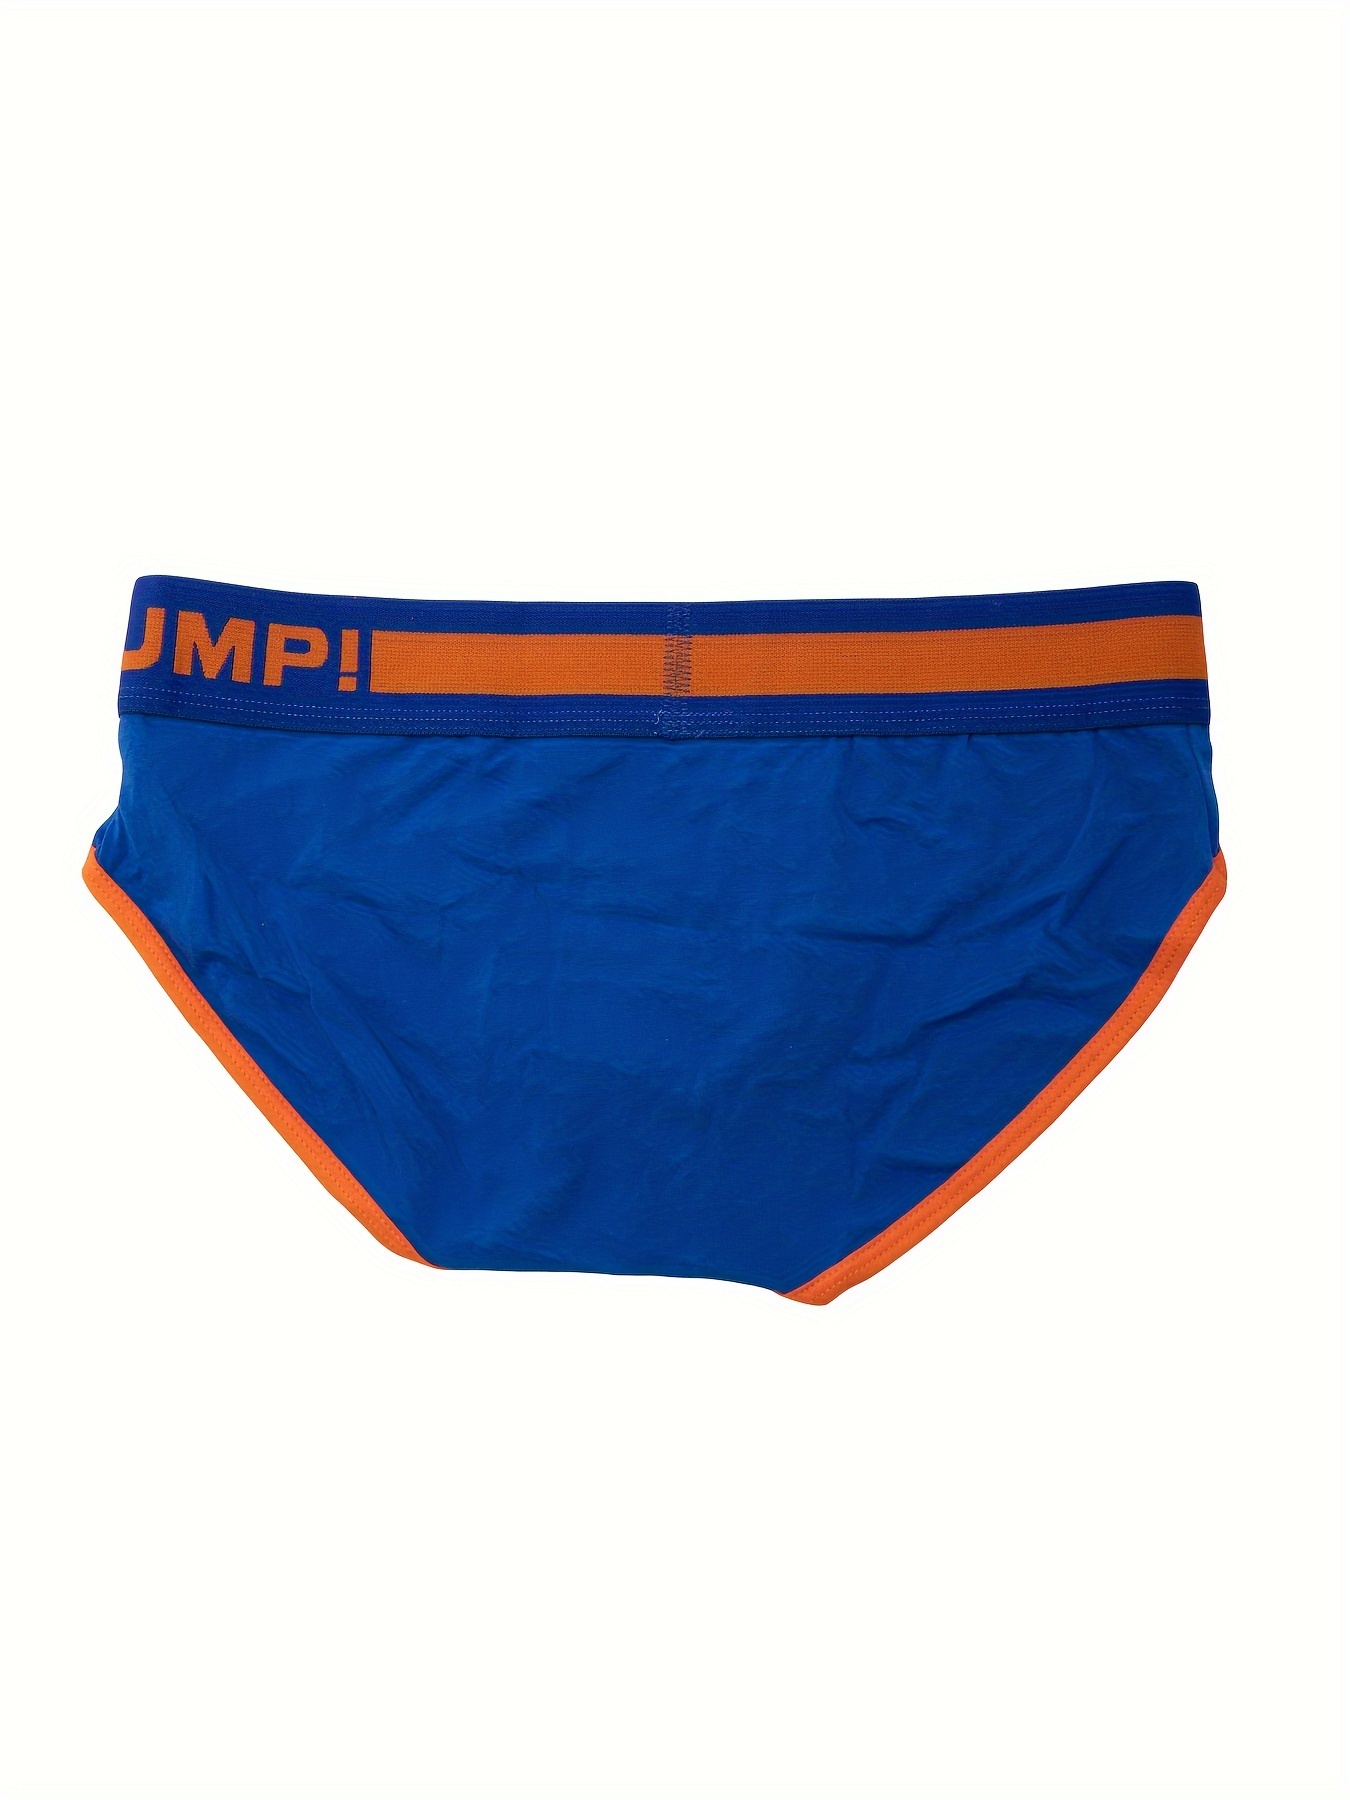 5pcs Men's Casual Plain Color Briefs, Breathable Comfy Panties, Quick  Drying Medium Stretch Underpants, Men's Underwear